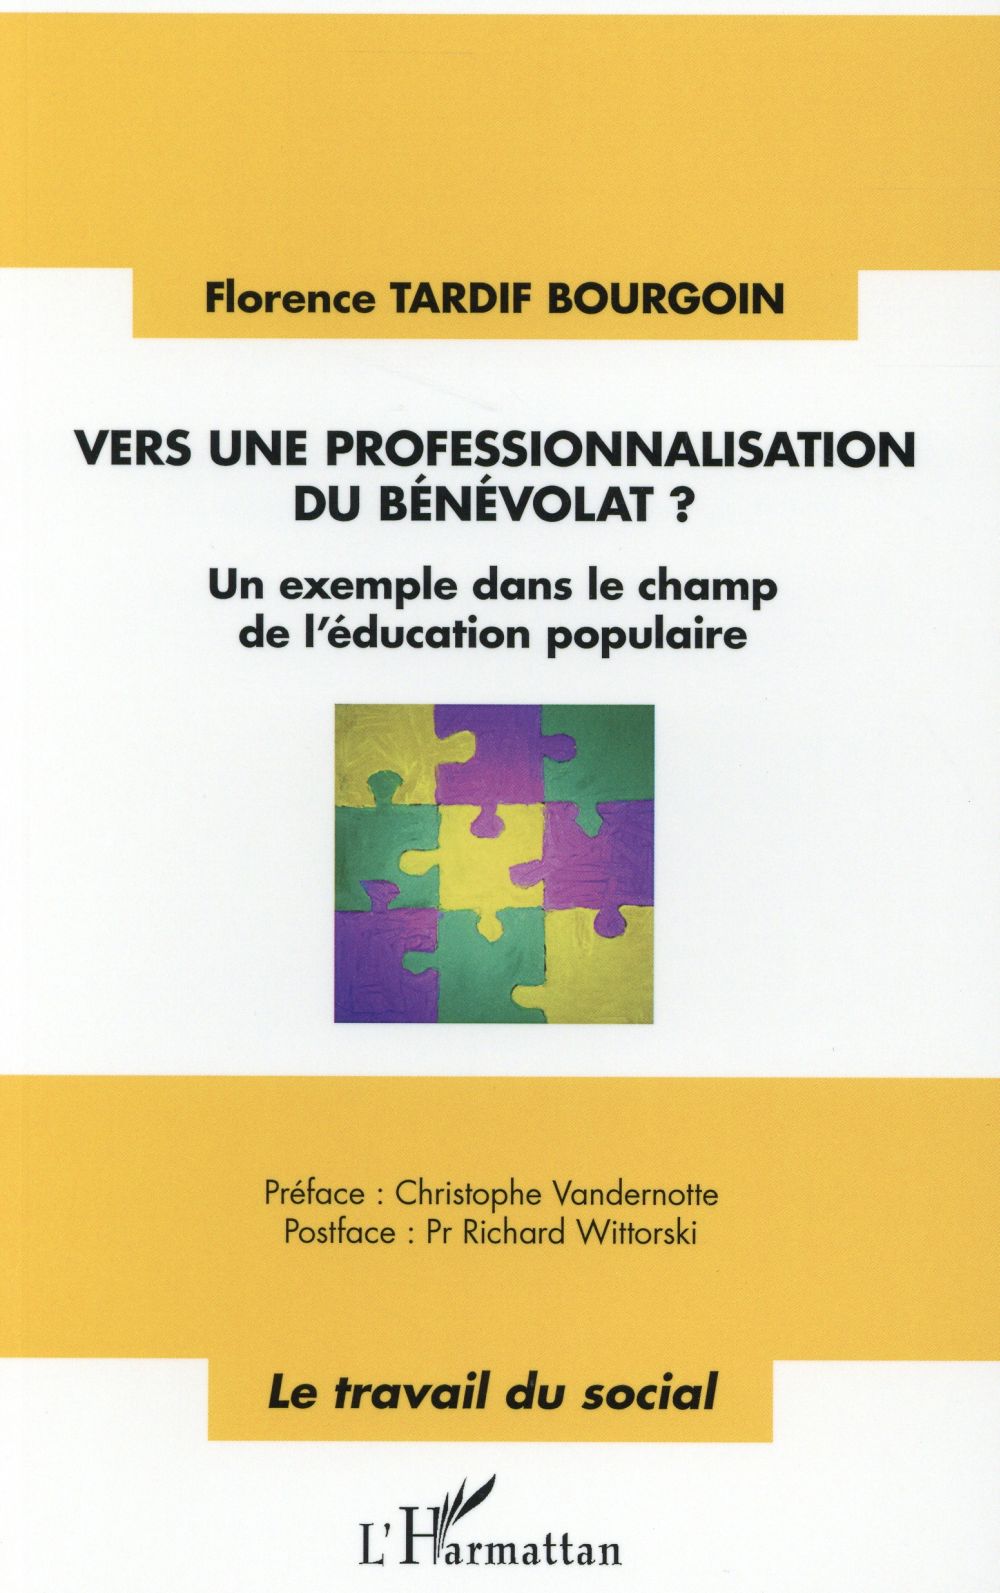 VERS UNE PROFESSIONNALISATION DU BENEVOLAT ? - UN EXEMPLE DANS LE CHAMP DE L'EDUCATION POPULAIRE